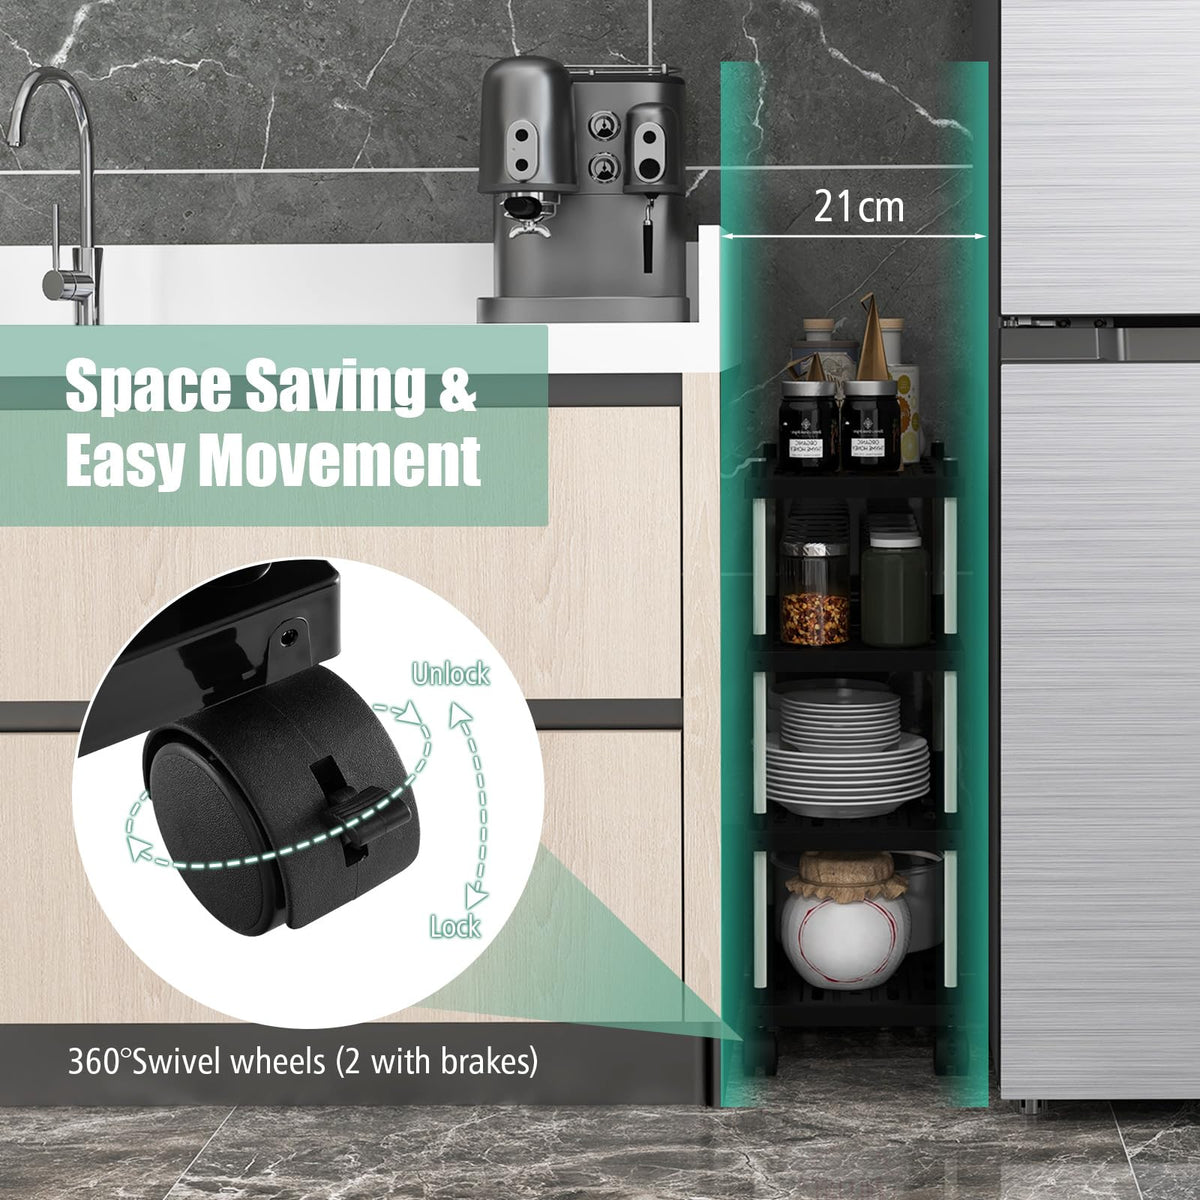 Giantex 4-Tier Slim Storage Cart Bathroom Kitchen Organizer Utility Cart with Lockable Wheels